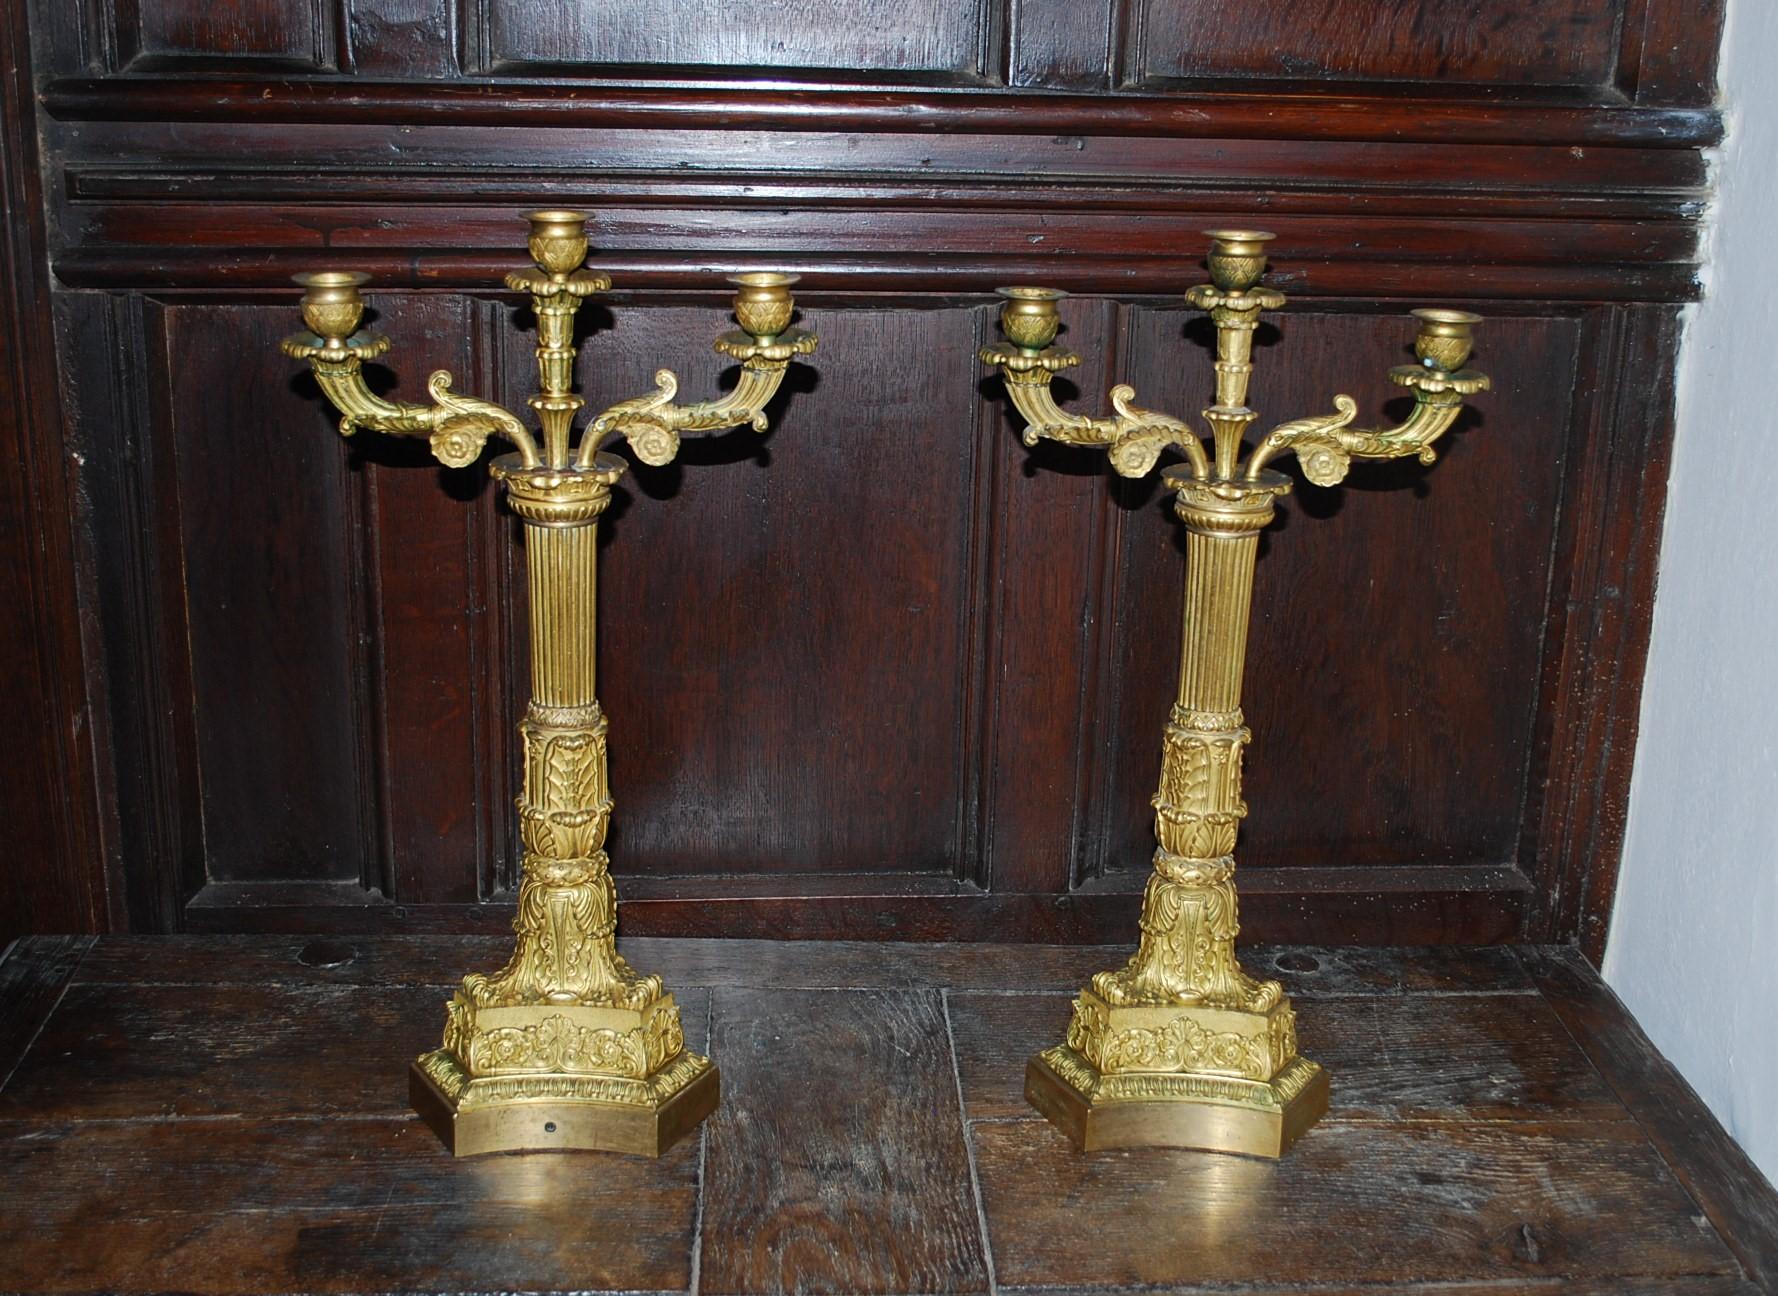 Hutton-Clarke Antiques a le plaisir de présenter une magnifique paire de candélabres Empire en bronze doré, datant d'environ 1890. Ces candélabres témoignent du savoir-faire exquis de l'époque de l'Empire, avec un moulage méticuleux et une finition